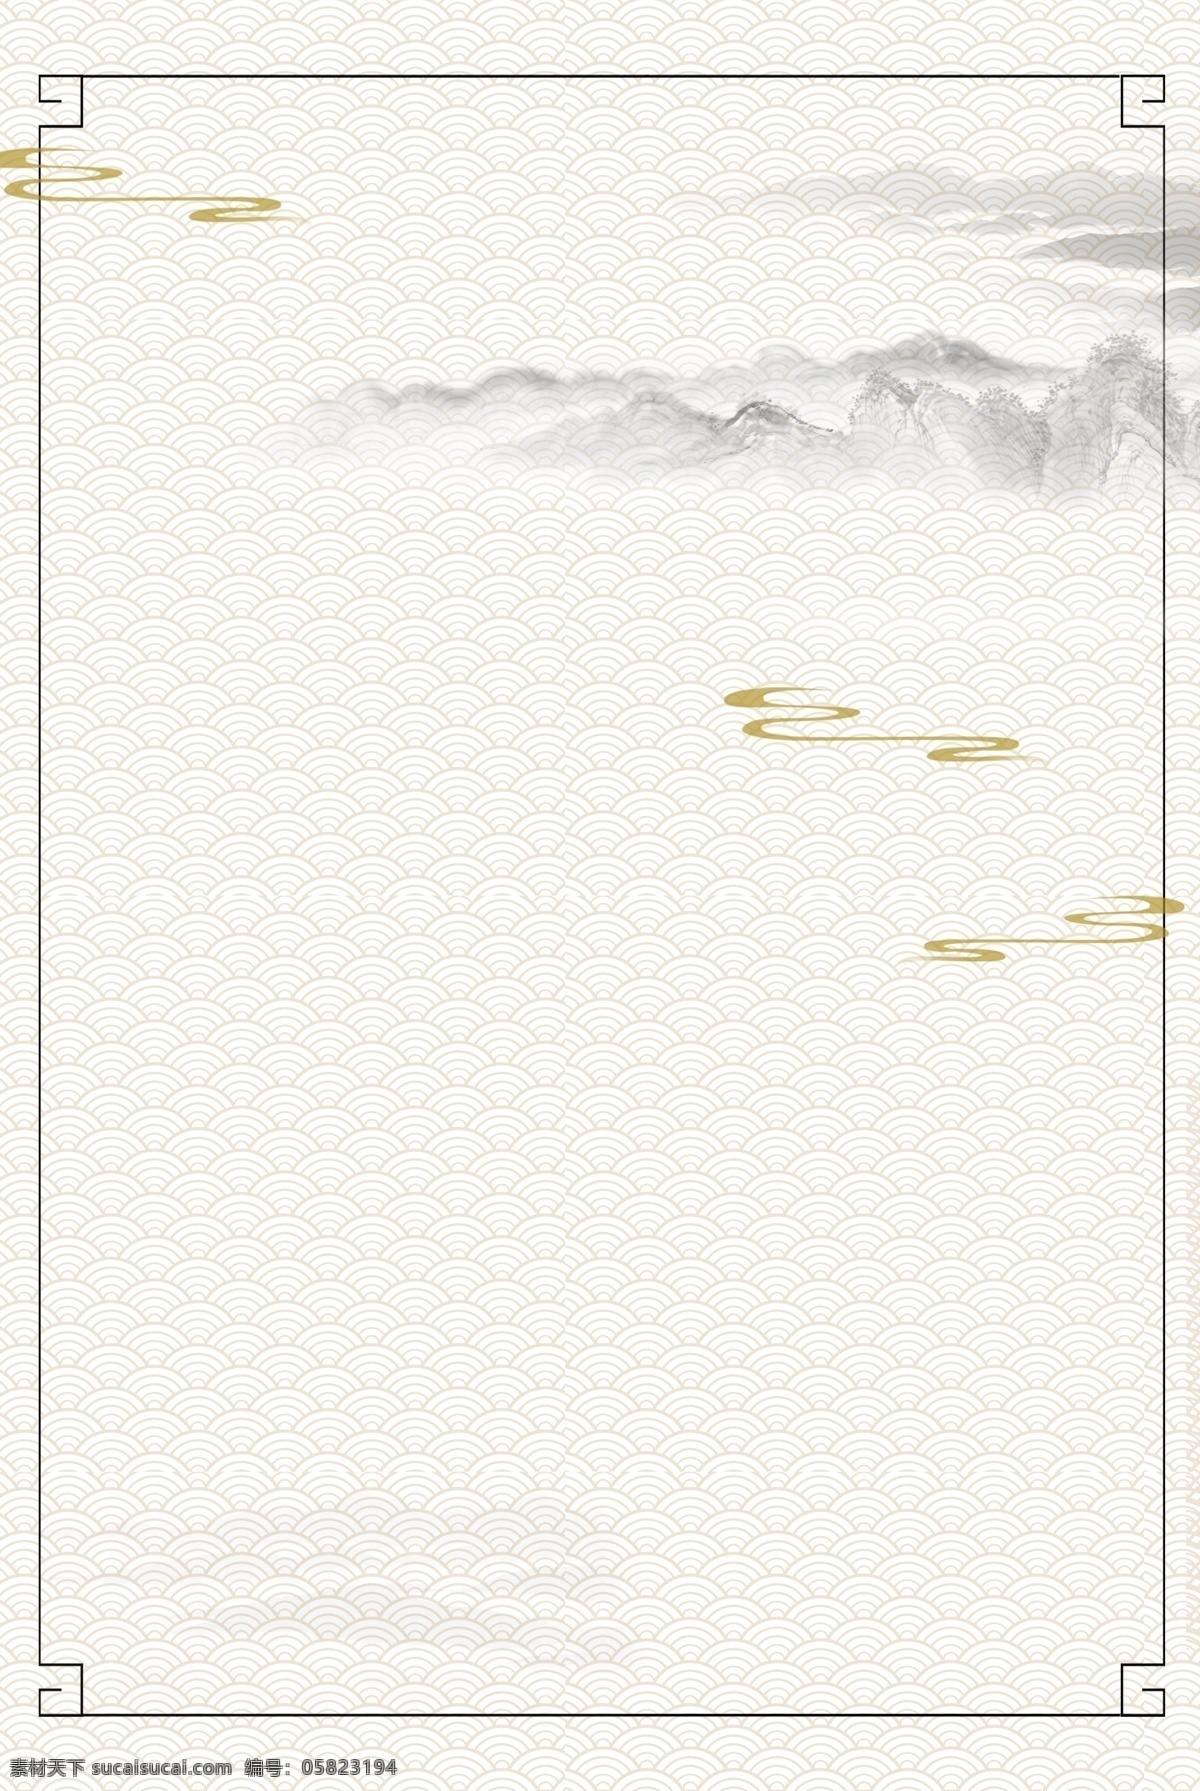 边框 荷花 怀旧 古风 广告 背景 图 黄色 中国风 复古 水墨 古典 水墨山水 传统 手绘 广告背景